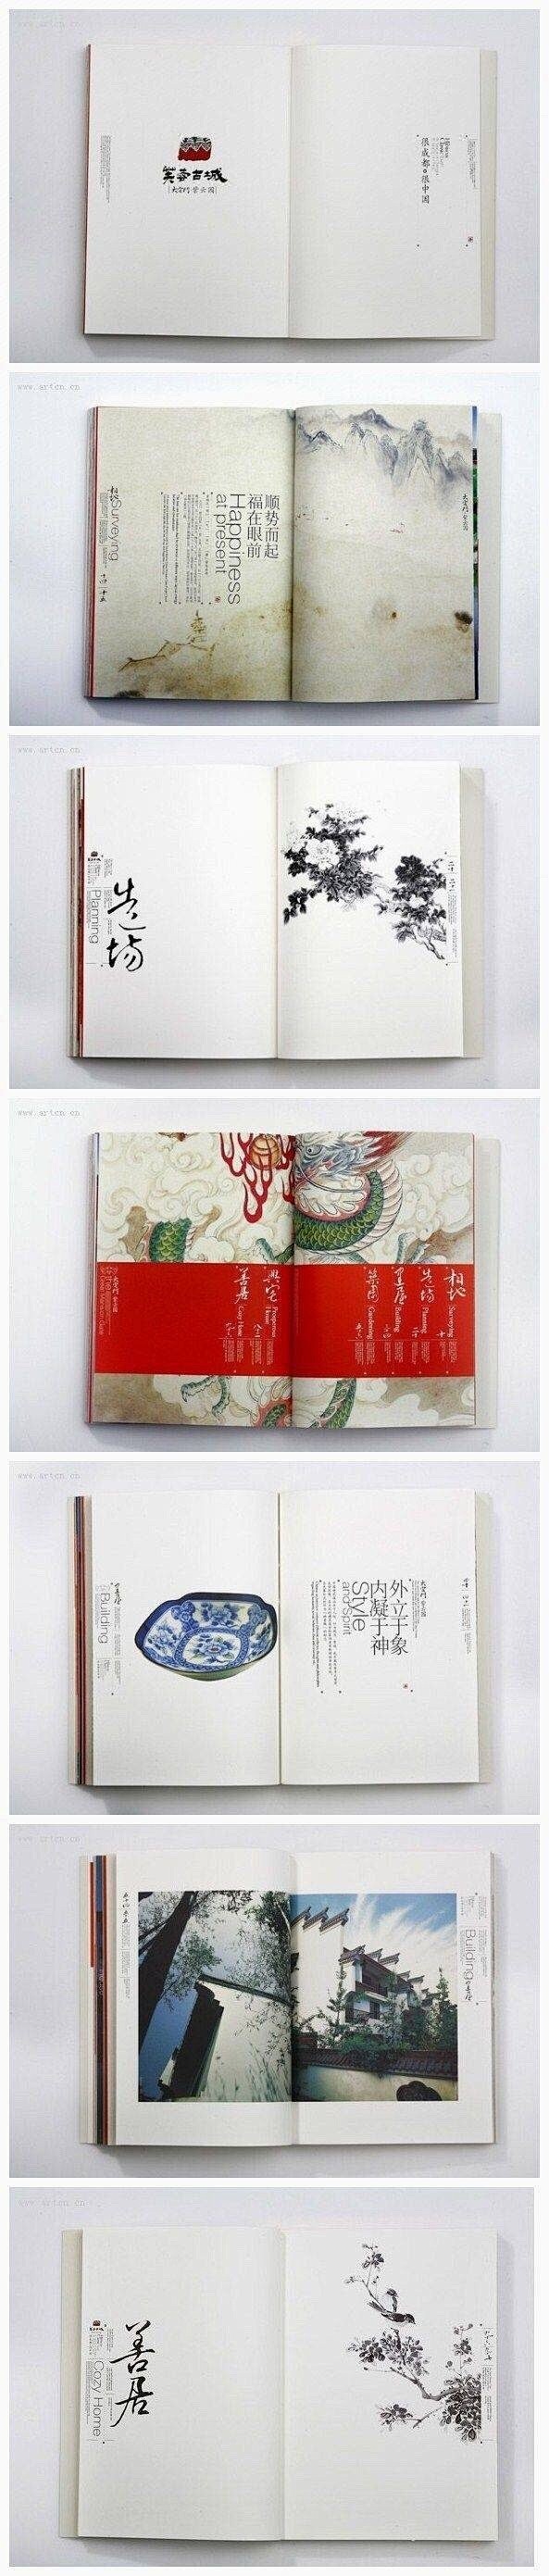 一组实用的中文画册版式设计参考 ​​​​